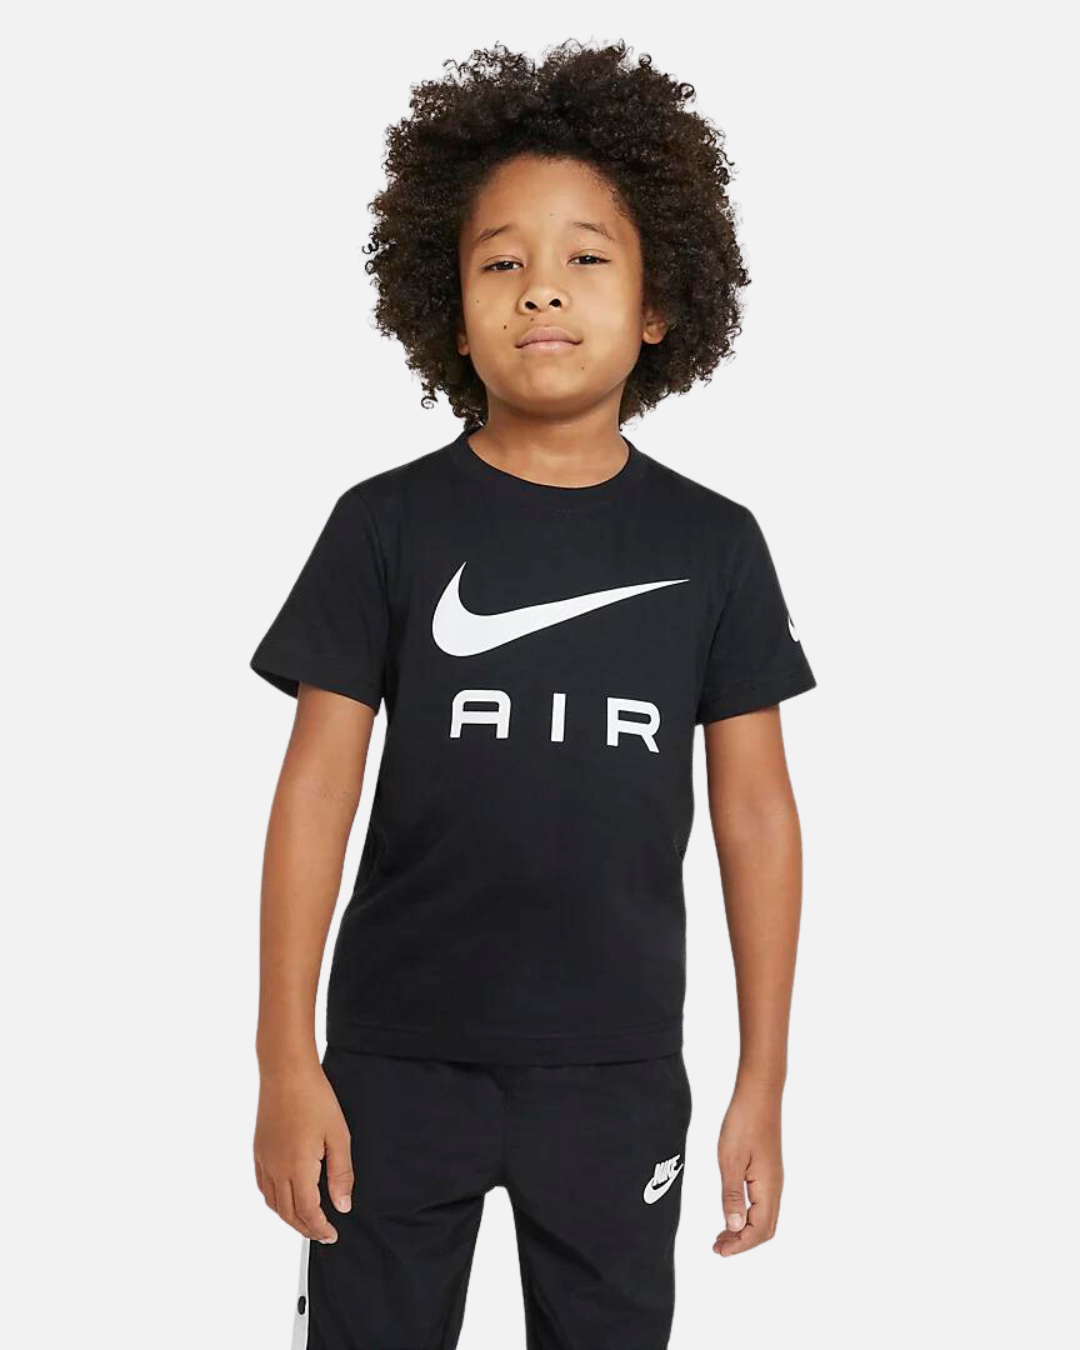 Maglietta Nike Air per bambini - nera